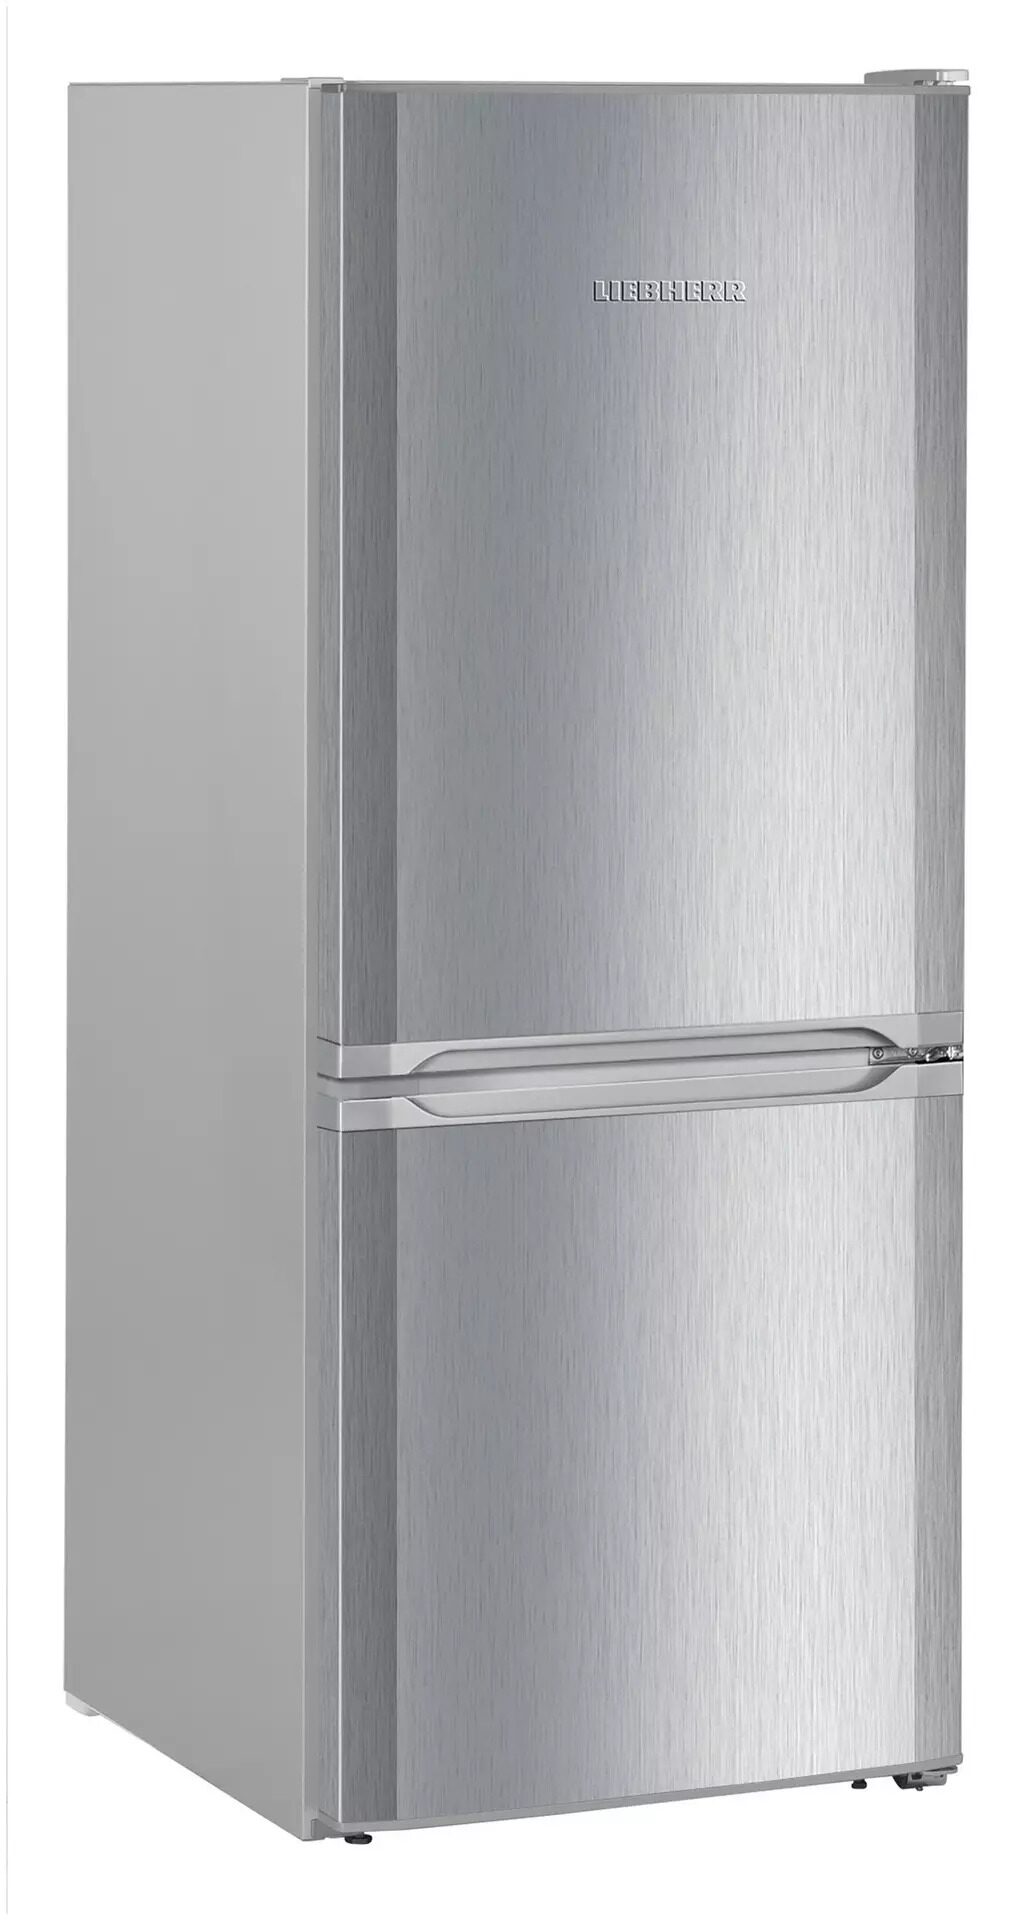 Спб купить холодильник недорого двухкамерный. Liebherr cuel 2831. Холодильник Liebherr cuel 3331. Холодильник Liebherr Cnel 4213. Холодильник Liebherr (Либхер) CNPEL 4813.